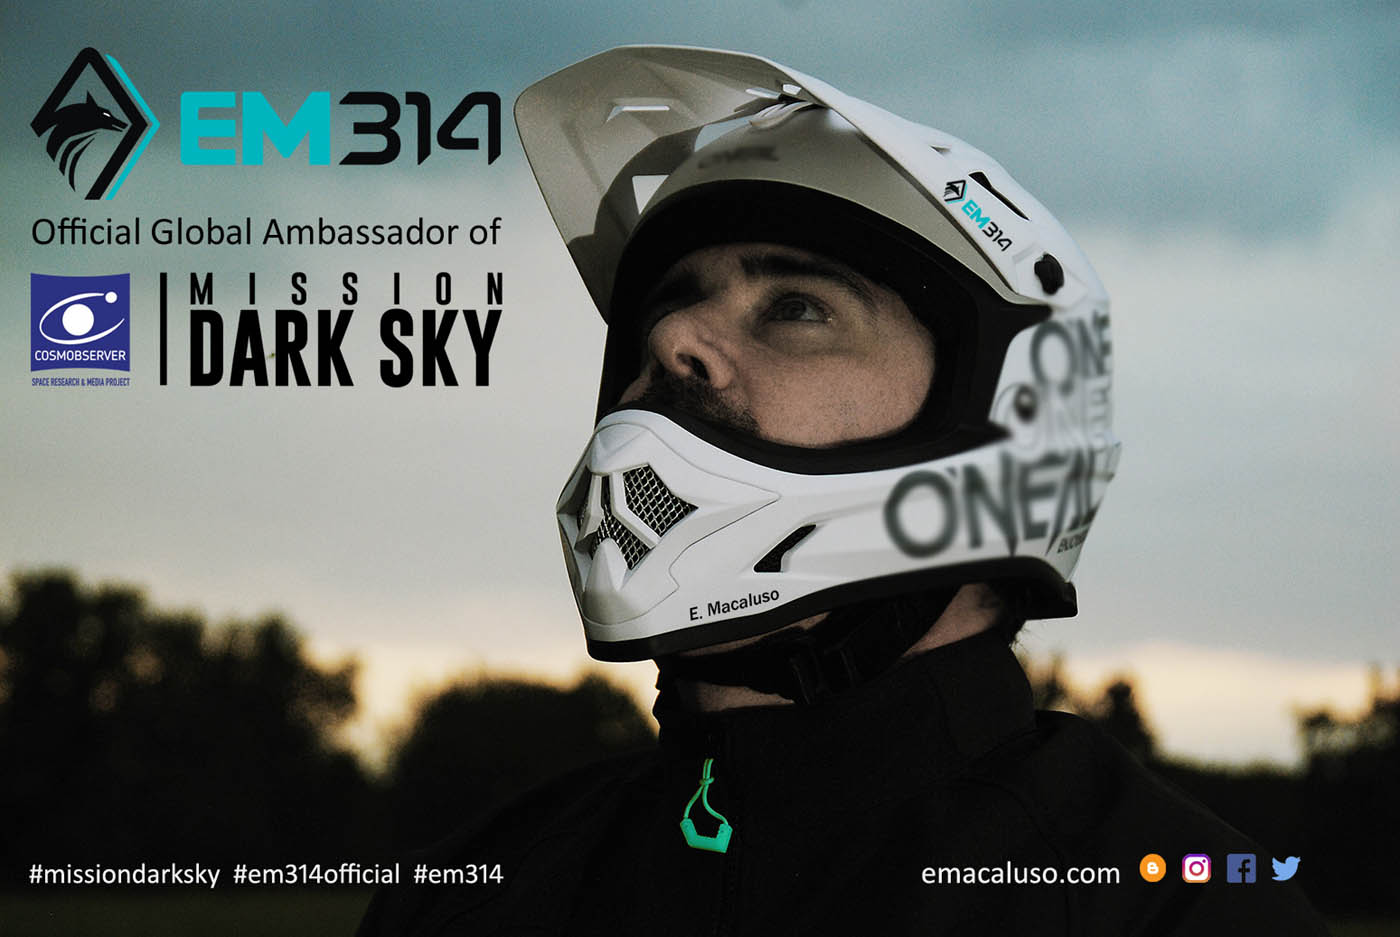 Foto 1 - Emmanuele Macaluso “EM314” supporta la campagna globale sull’inquinamento luminoso “Mission Dark Sky” 